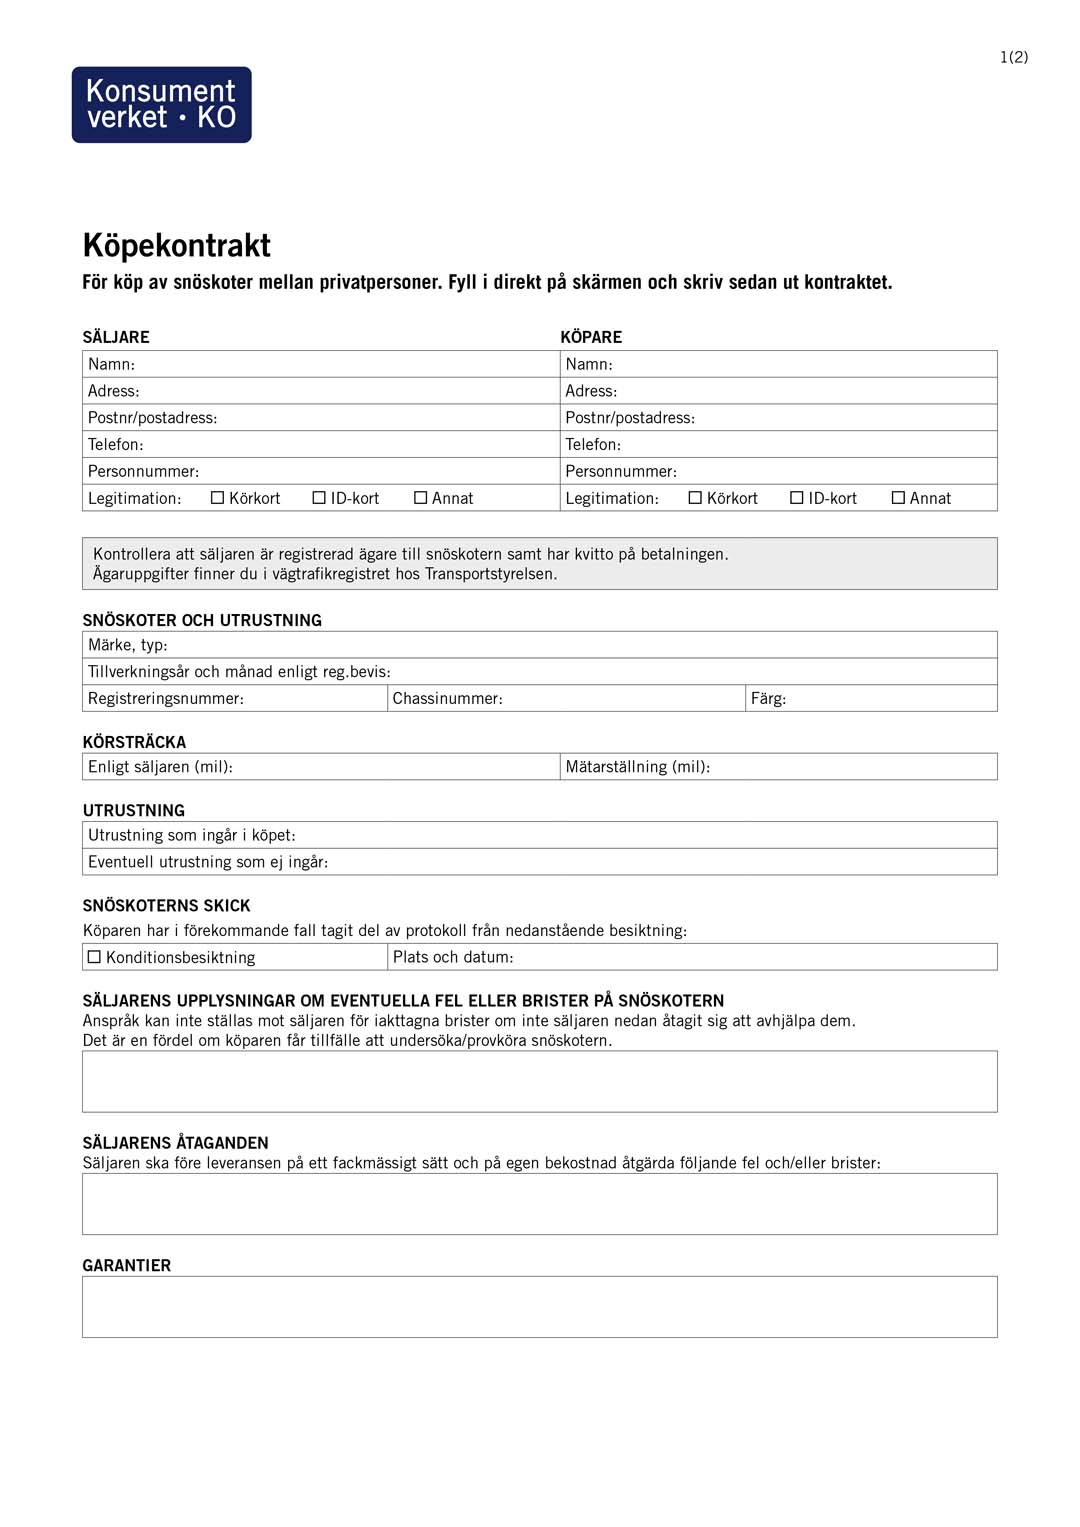 Köpekontrakt för snöskoter - Publikationer - Konsumentverket